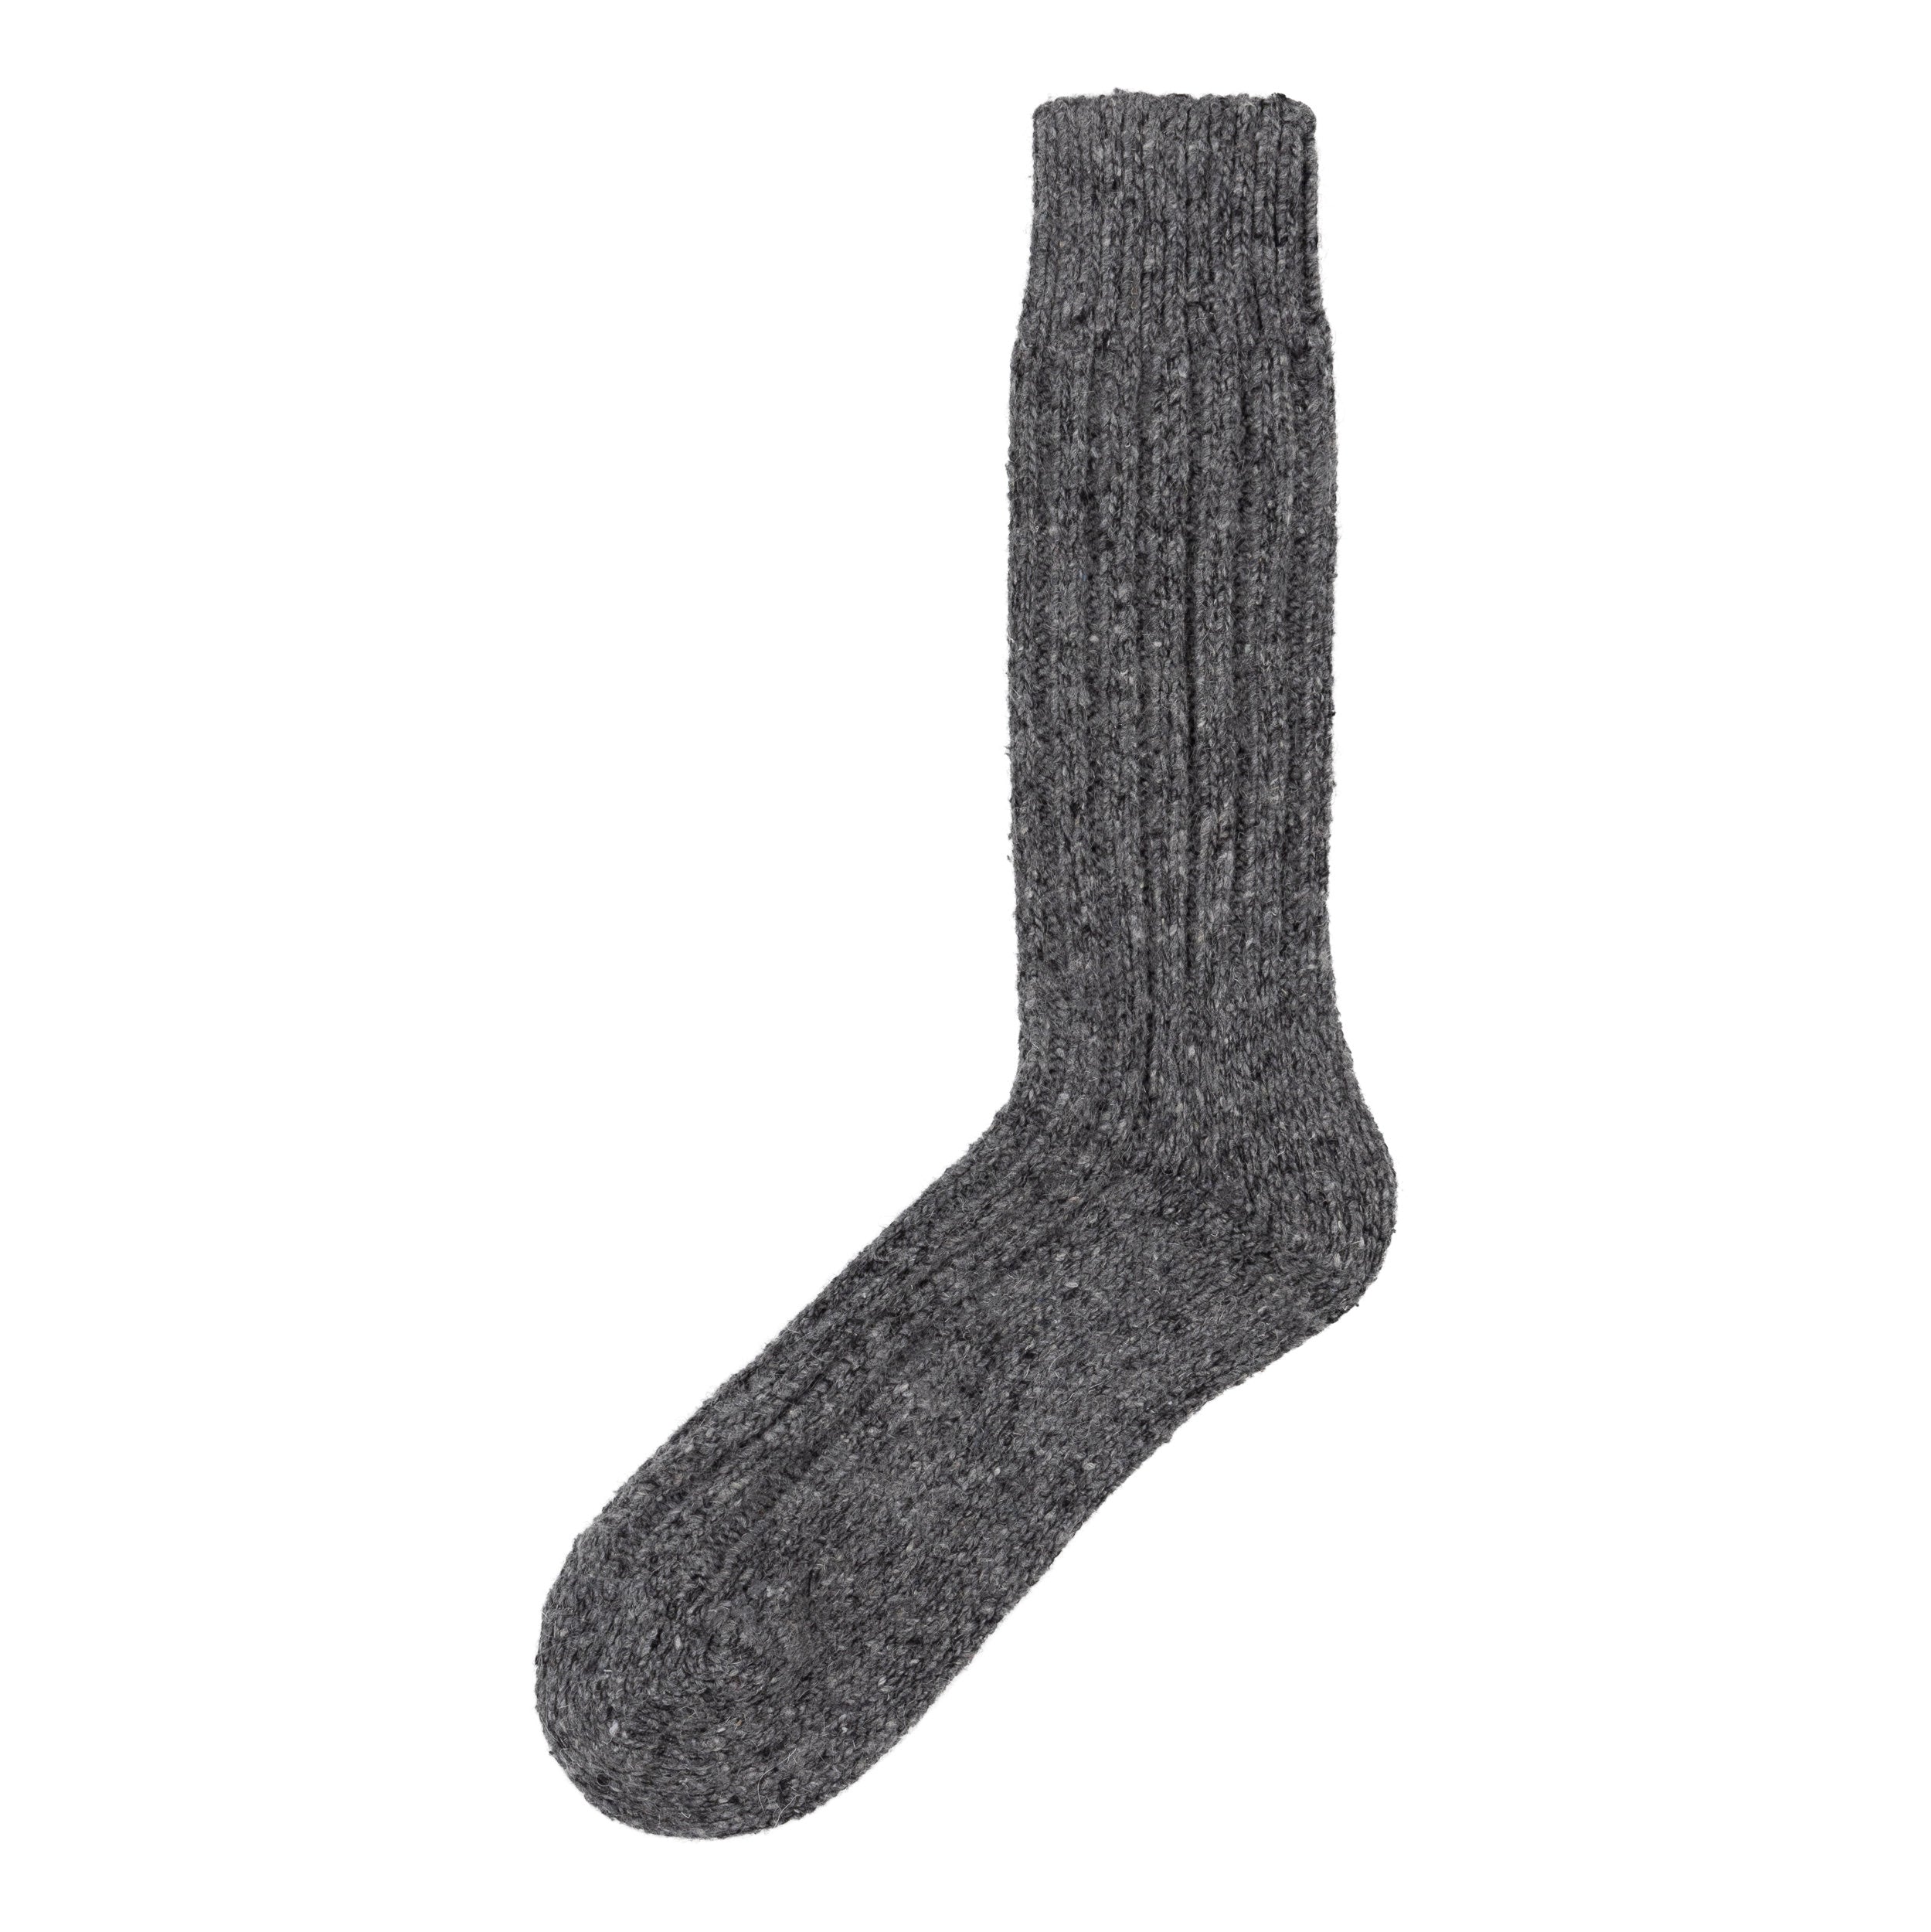 Carrier Company Aran Wool Sock in Grey